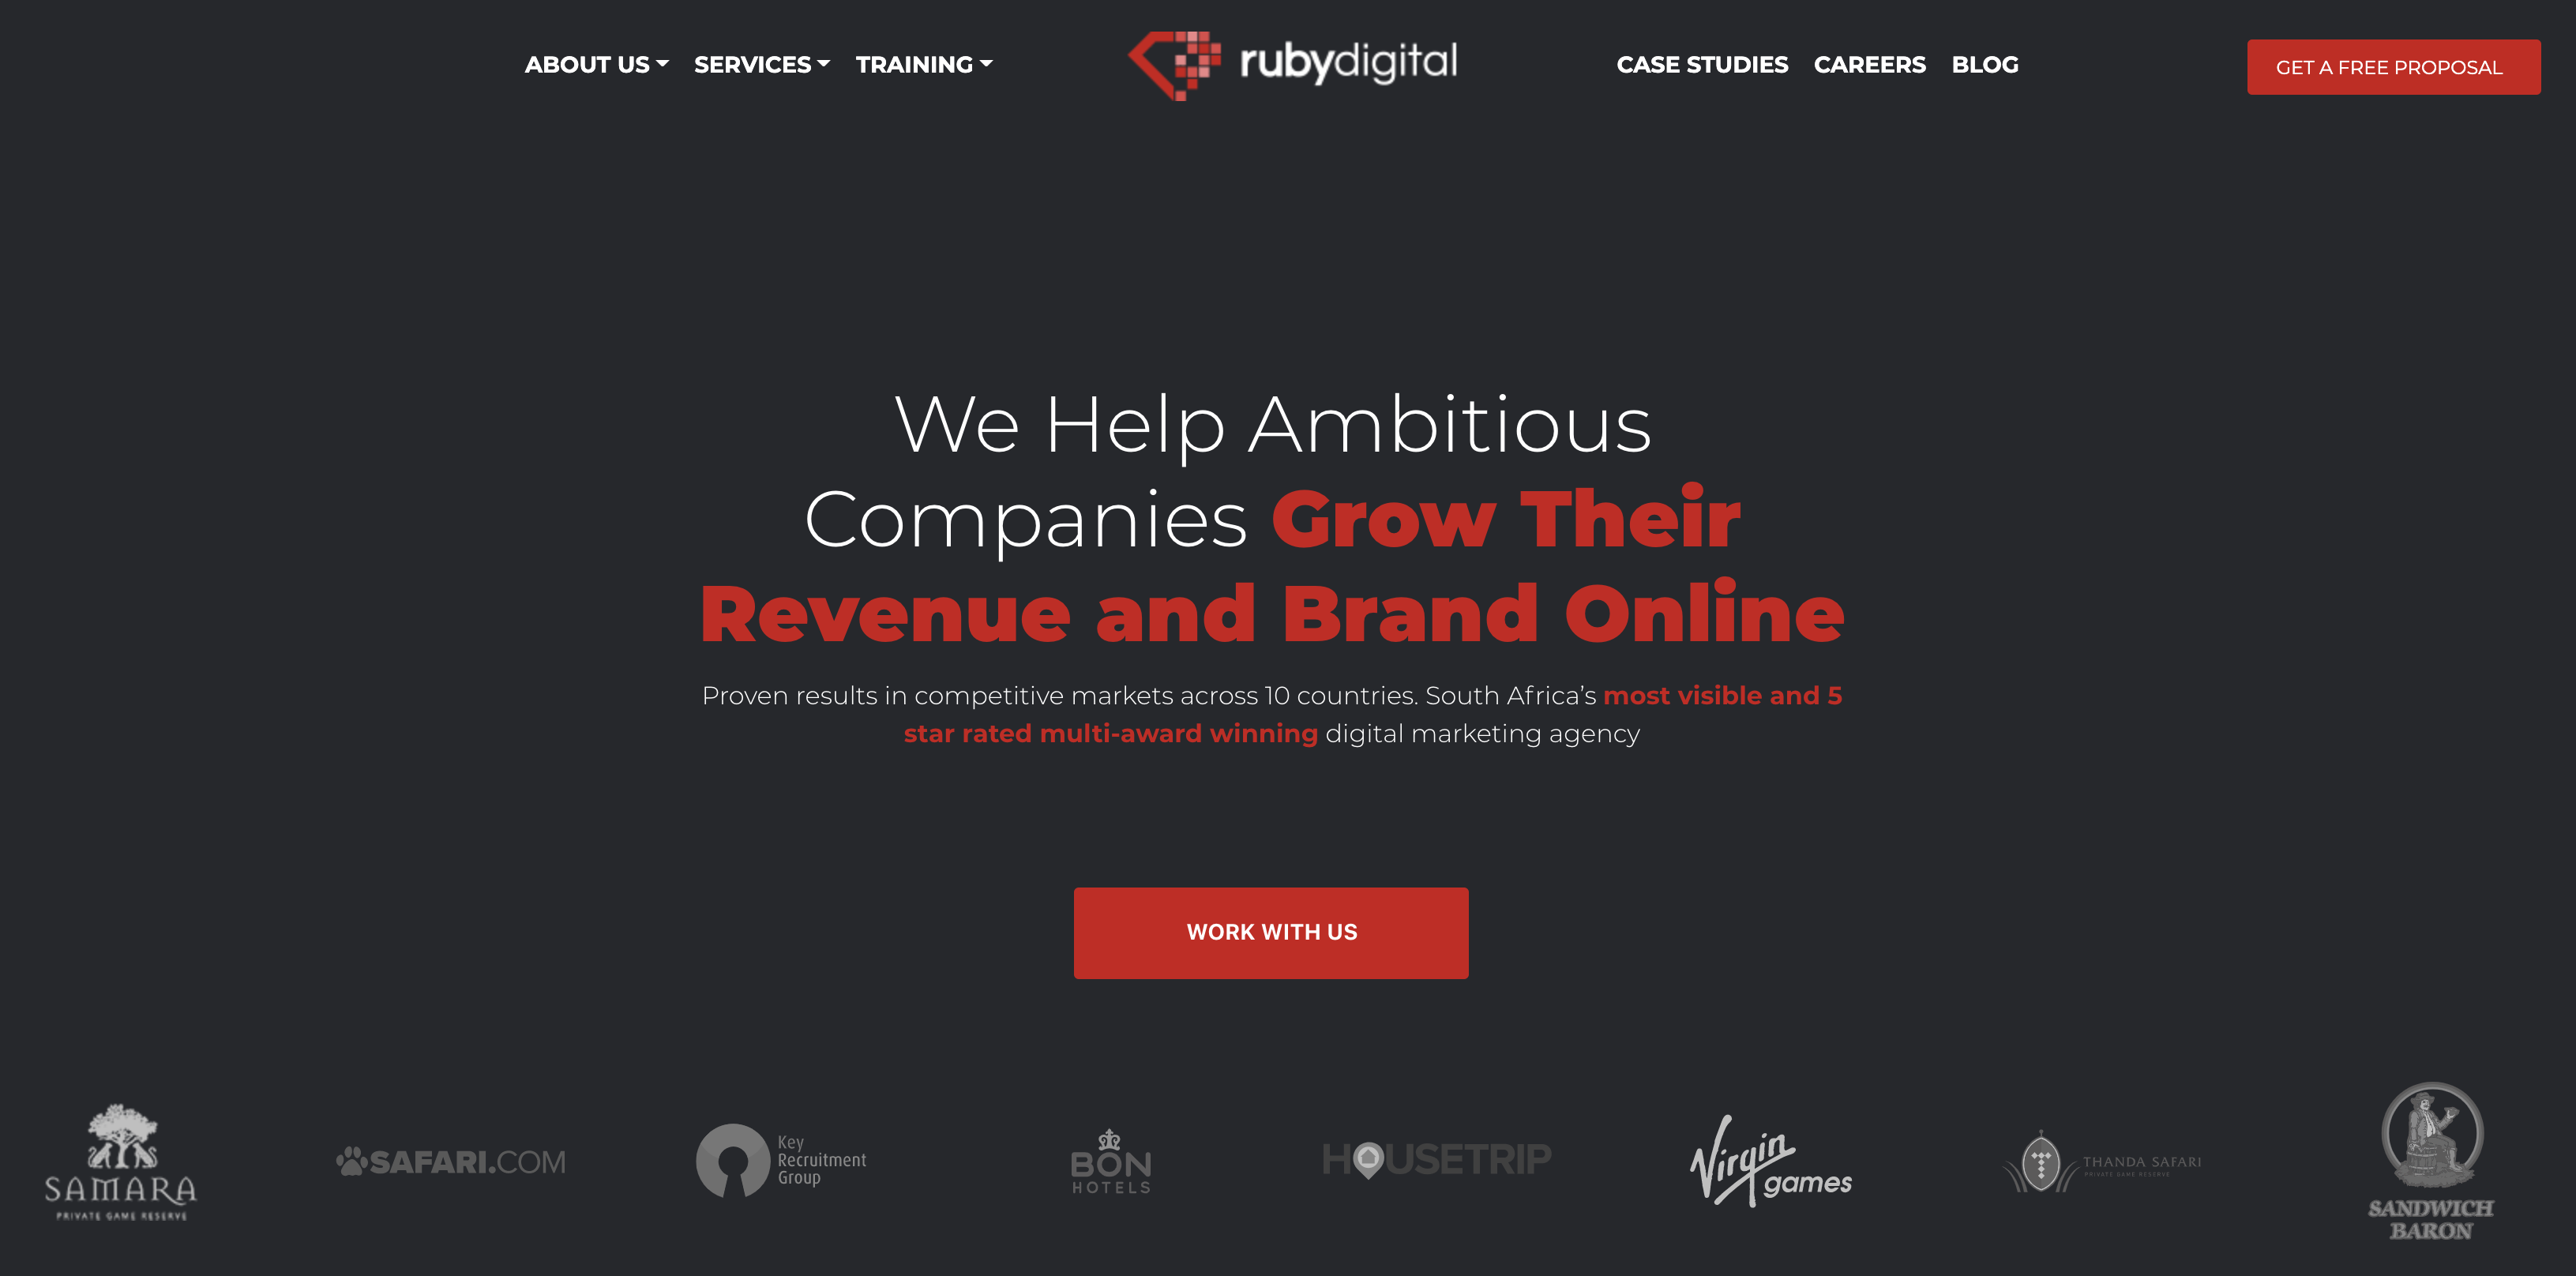 Ruby Digital